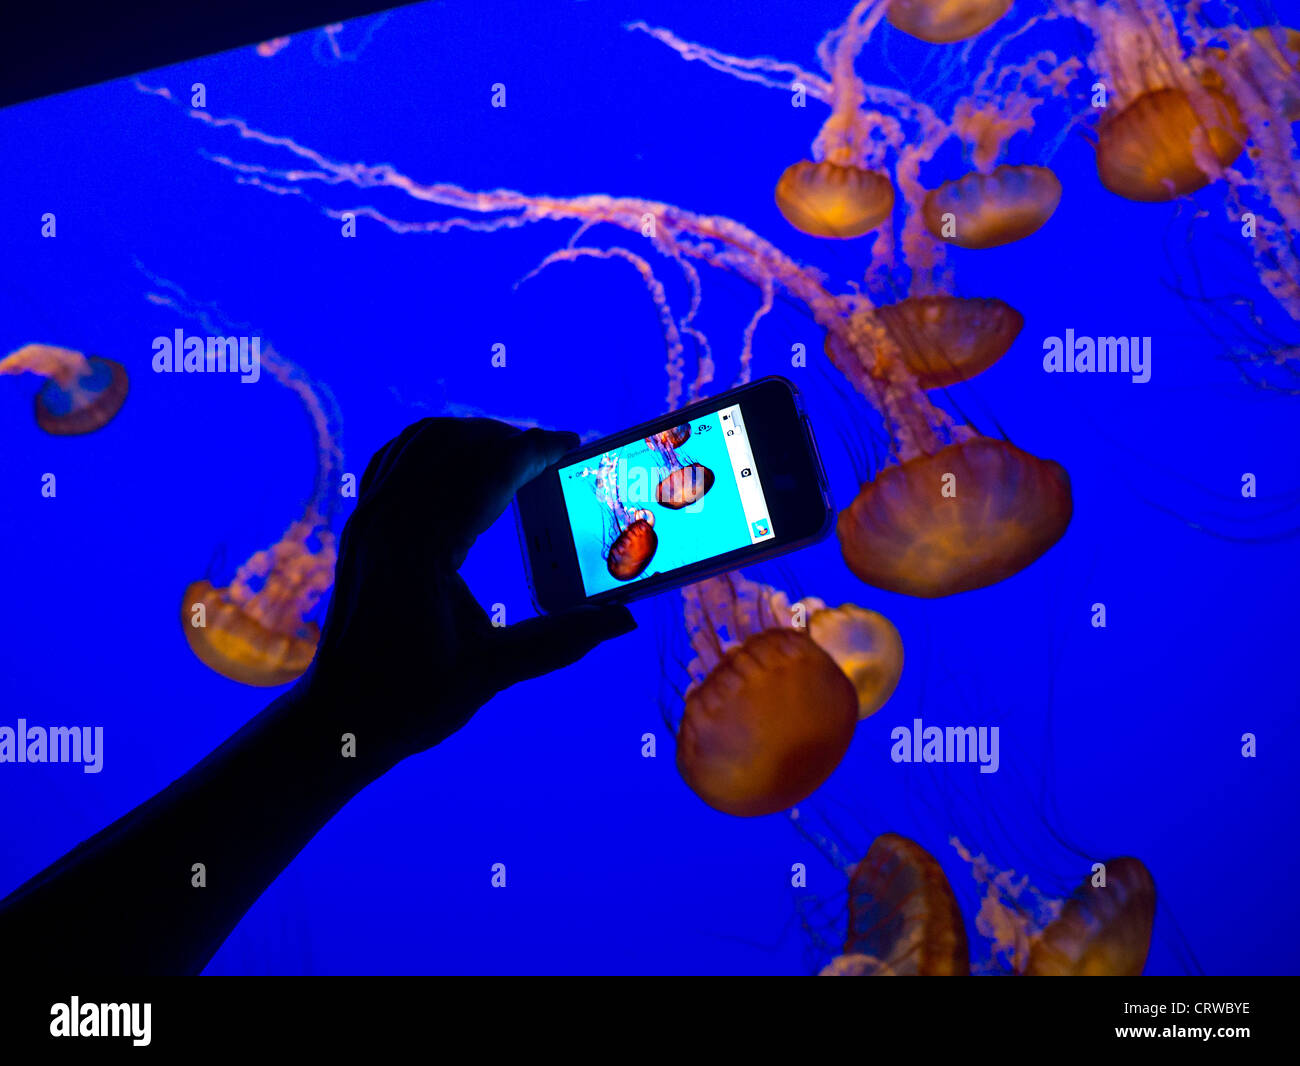 Les méduses AQUARIUM PHOTOGRAPHIE Hand holding smartphone de l'image en mouvement d'enregistrement d'impulsions méduses dans Monterey Bay Aquarium Monterey Californie USA Banque D'Images